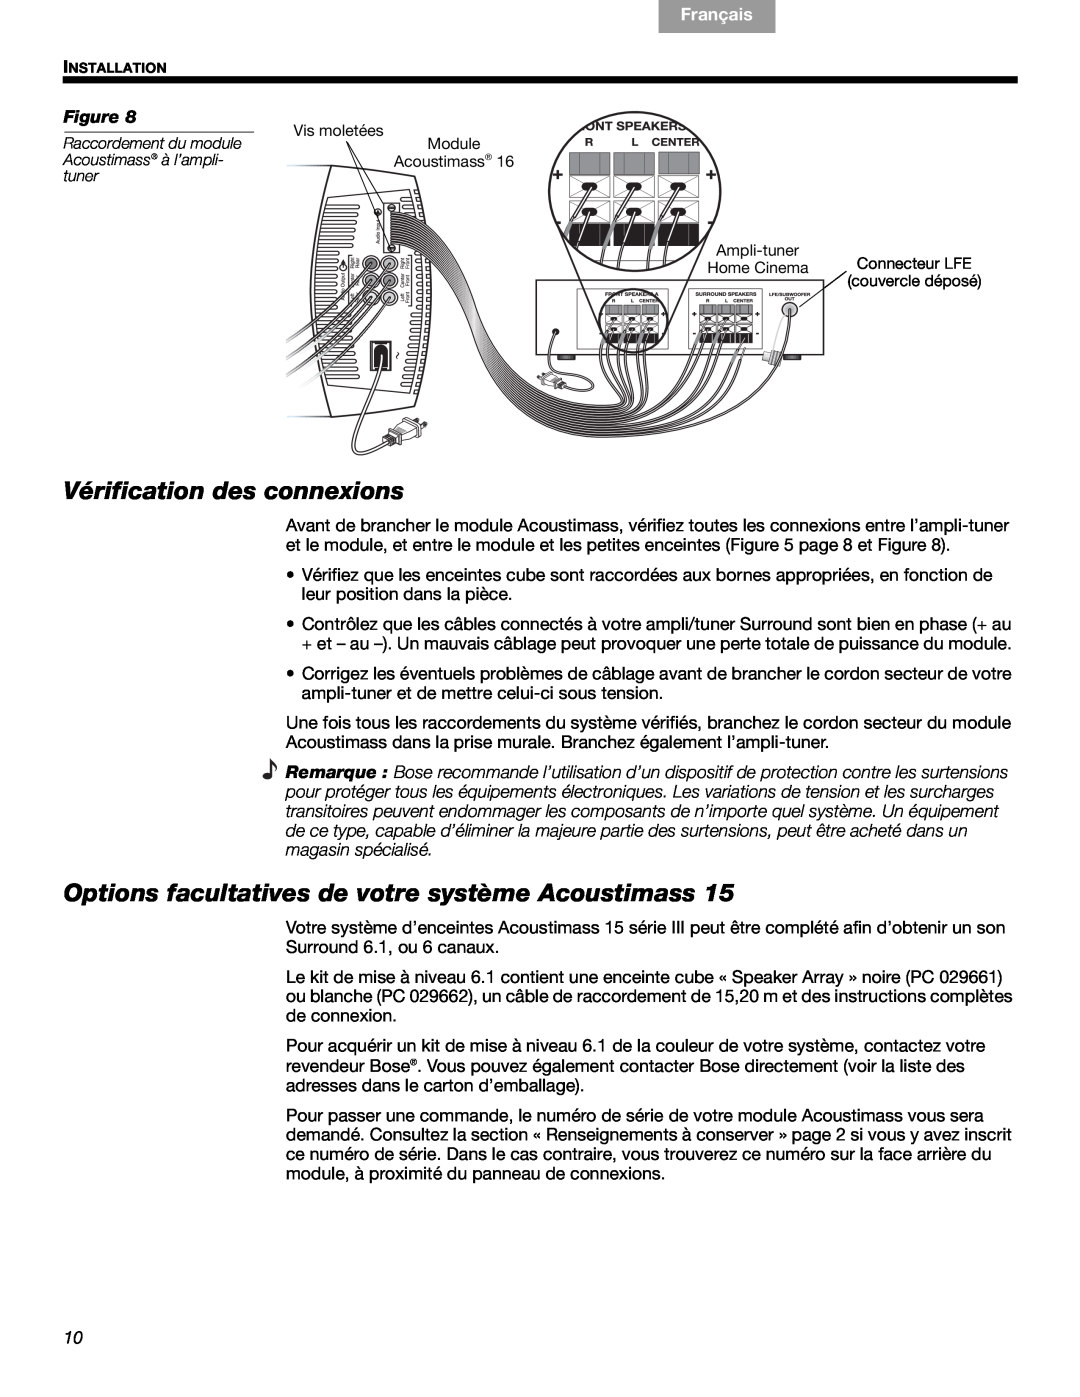 Bose 16, 15 Vérification des connexions, Options facultatives de votre système Acoustimass, Français, Español English 